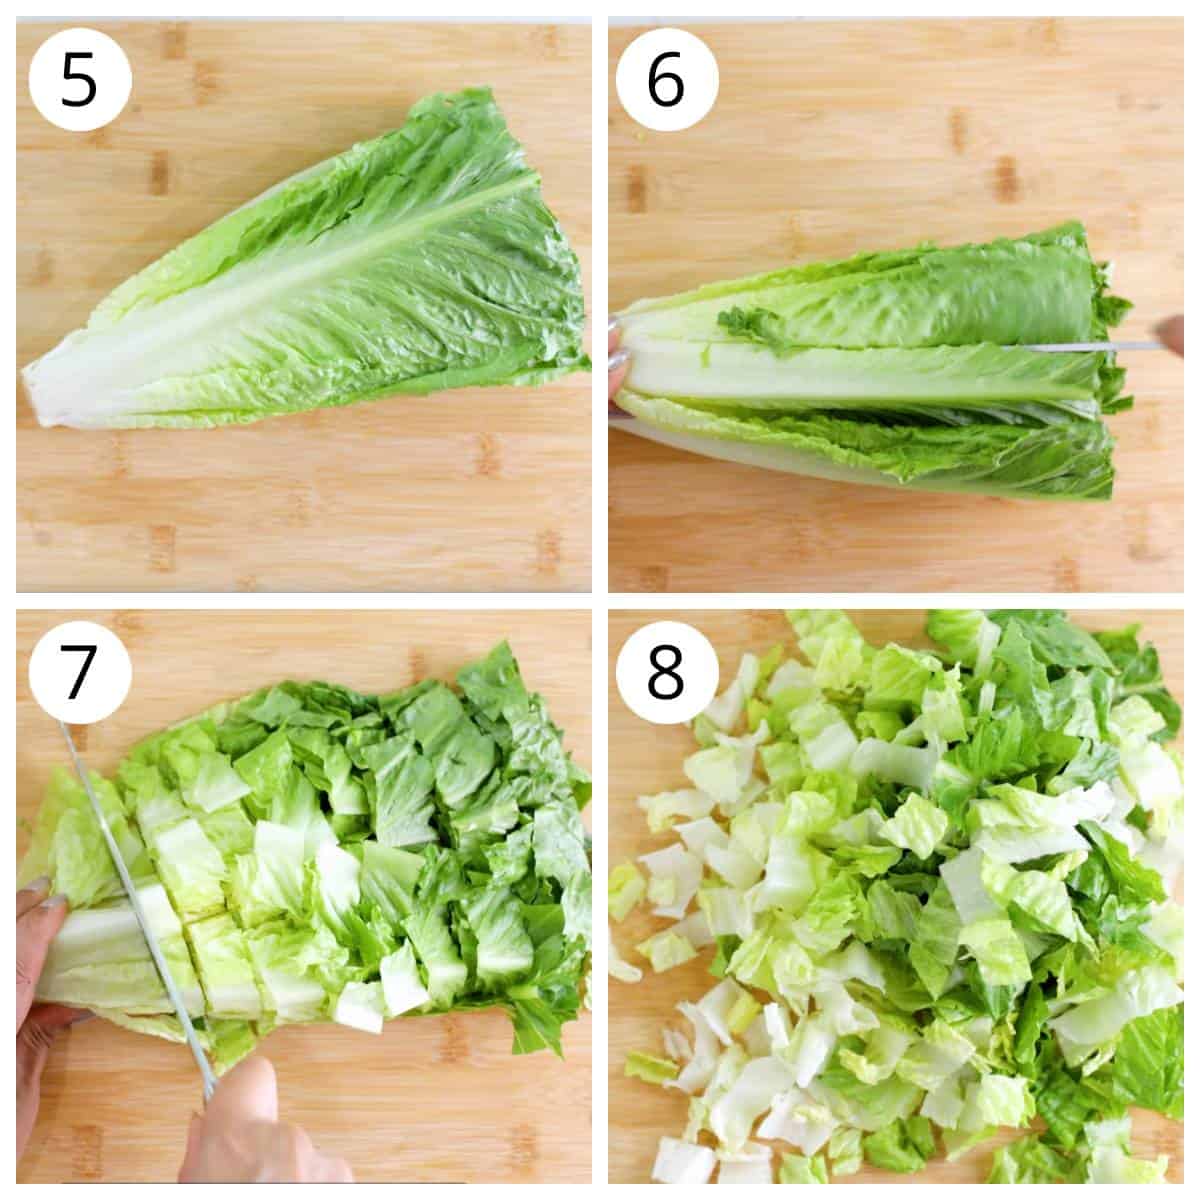 Steps for Chopping lettuce for caesar salad